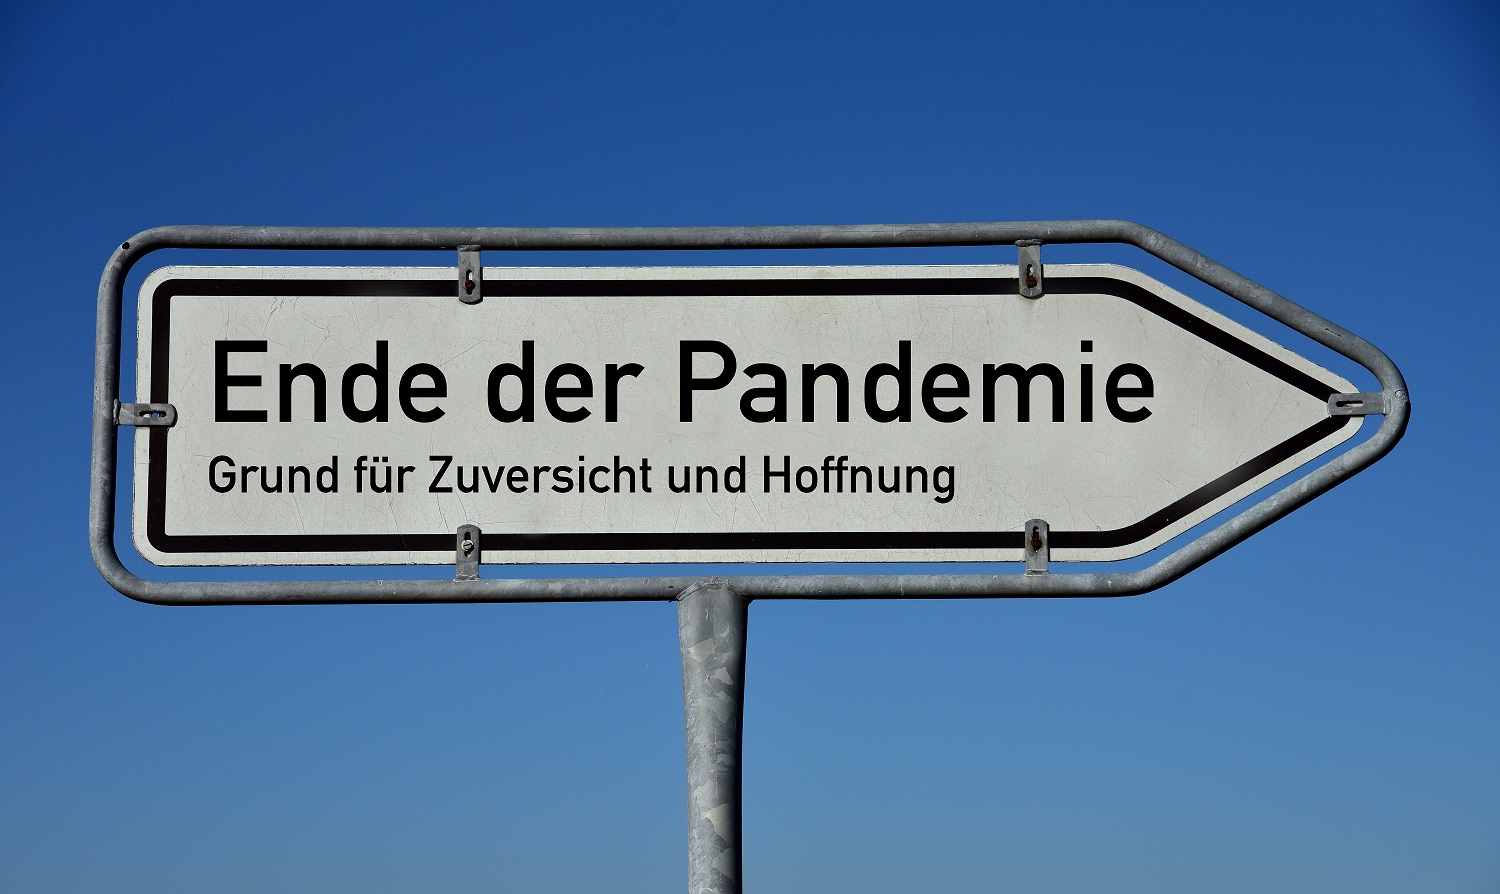 ende der Pandemie__by_ulleo_pixabay_pfarrbriefservice (c) ulleo_pixabay_pfarrbriefservice